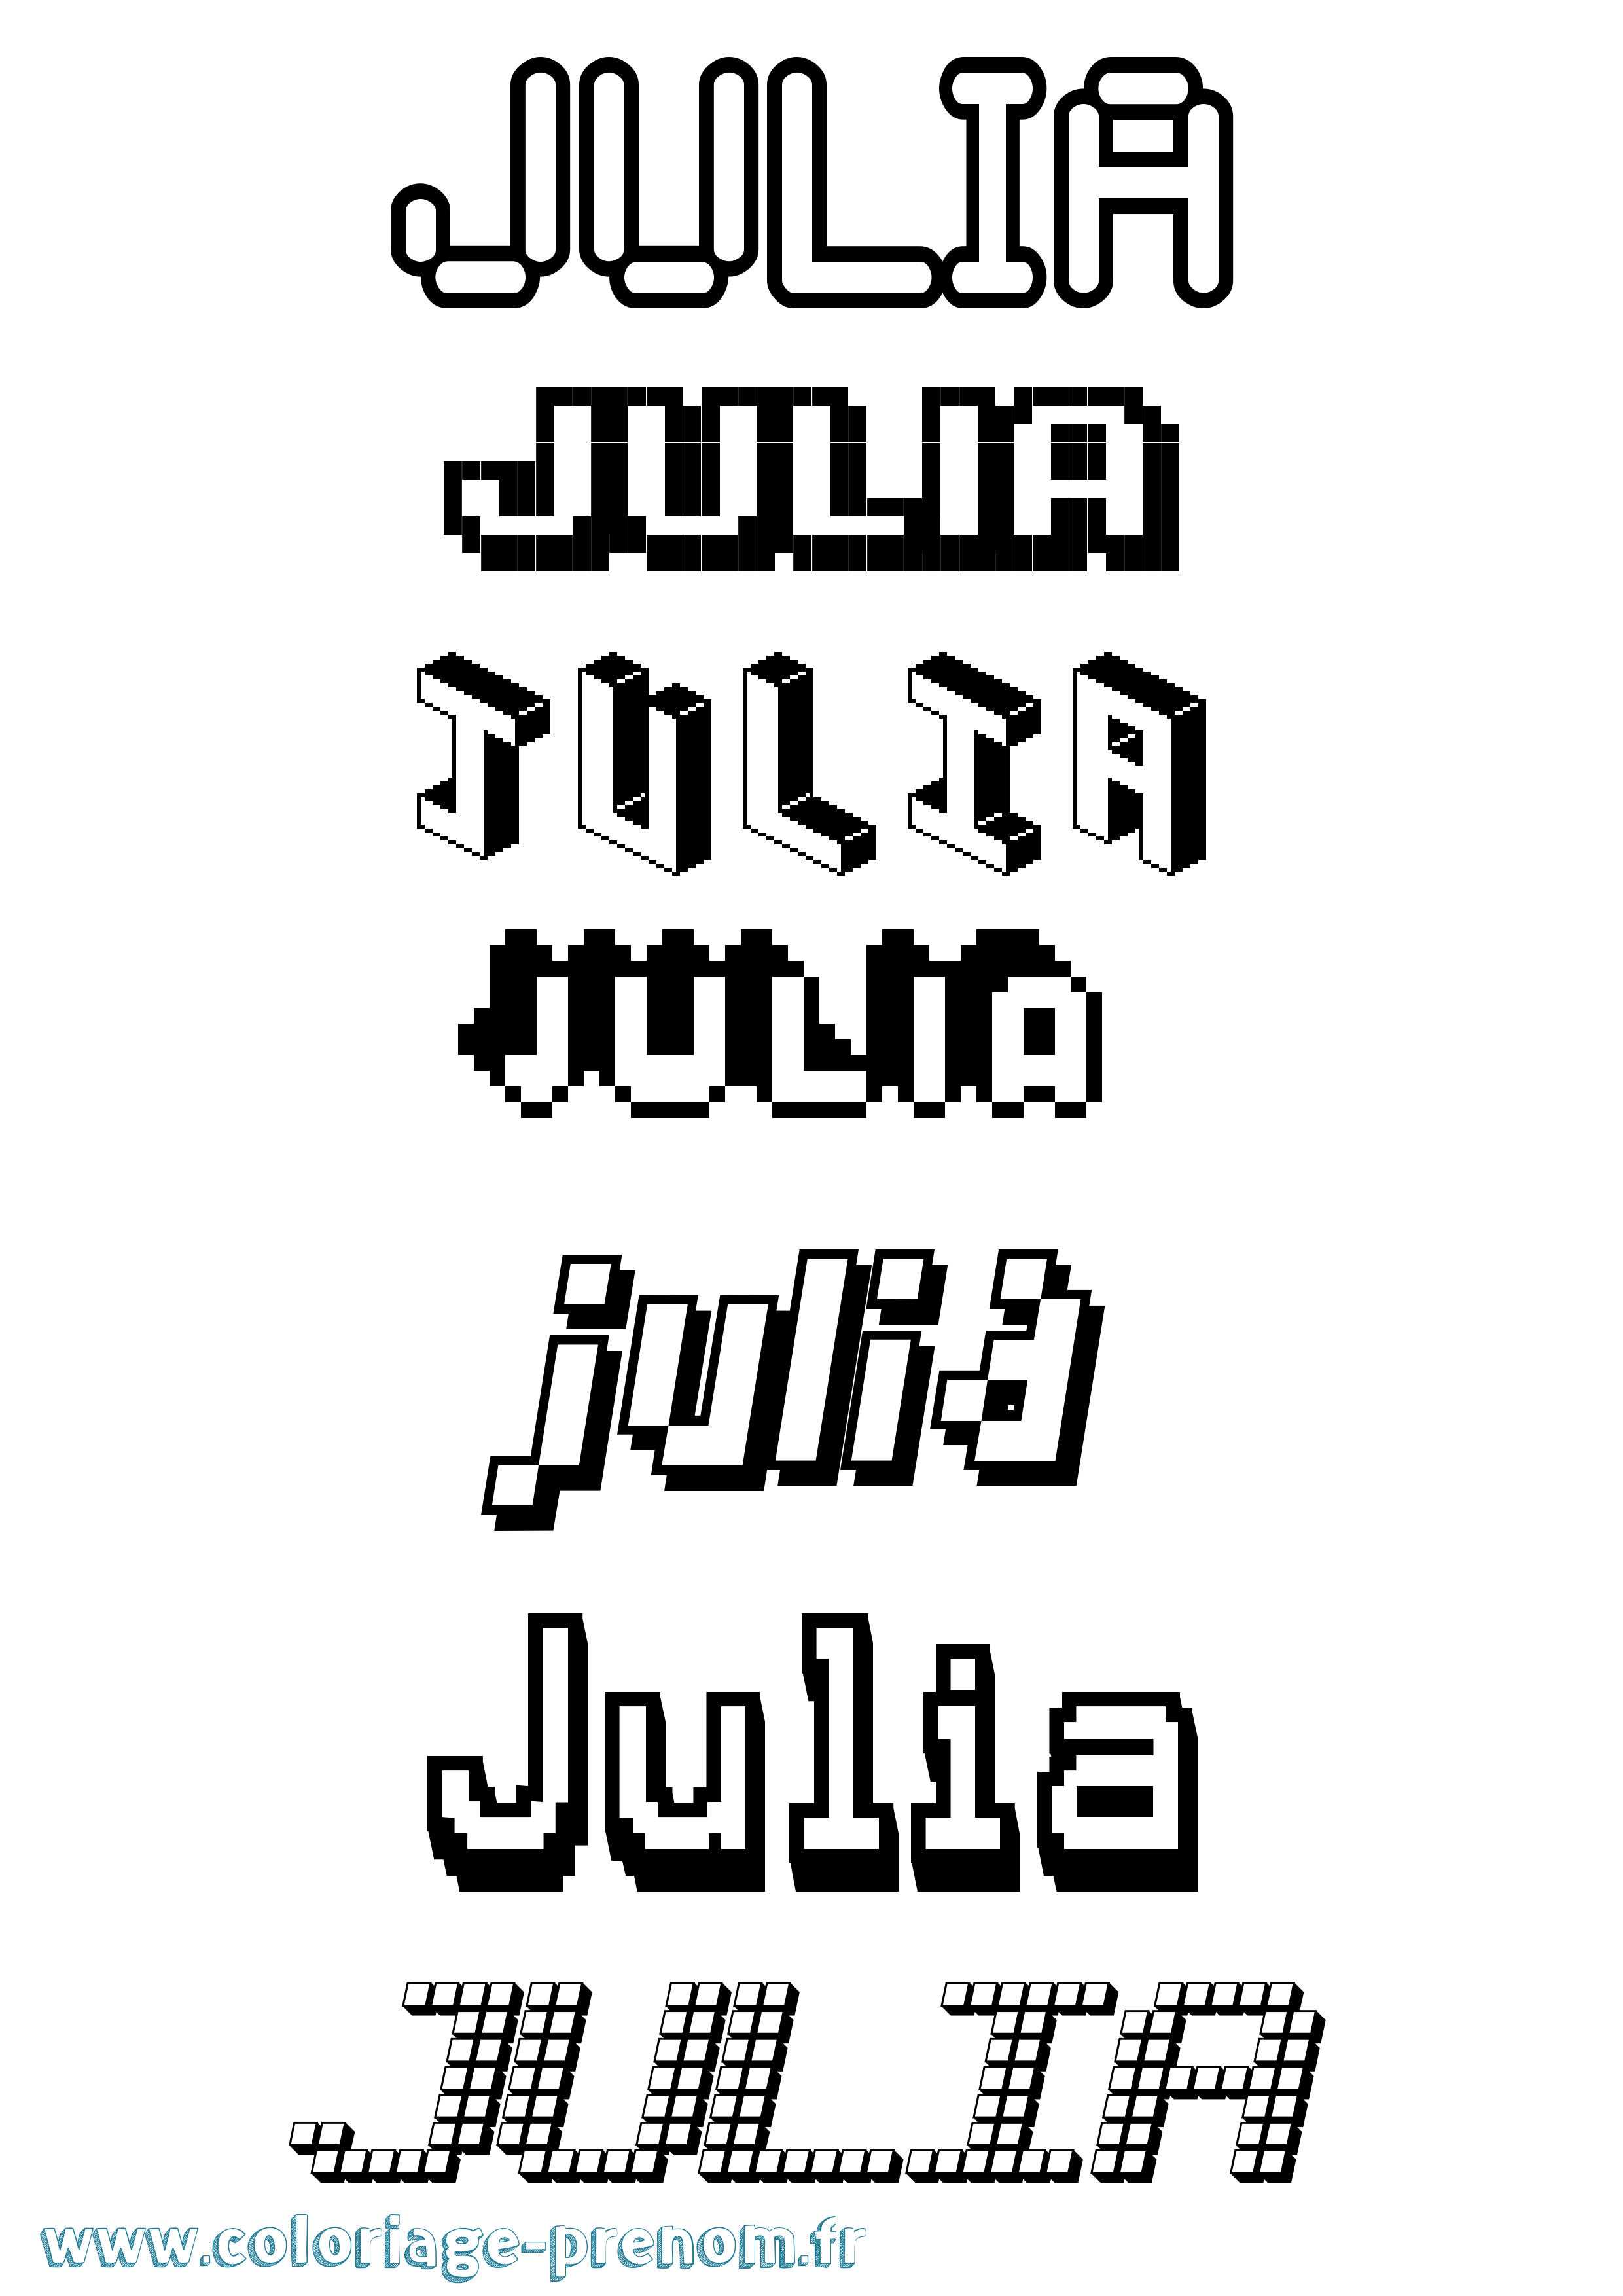 Coloriage prénom Julia Pixel